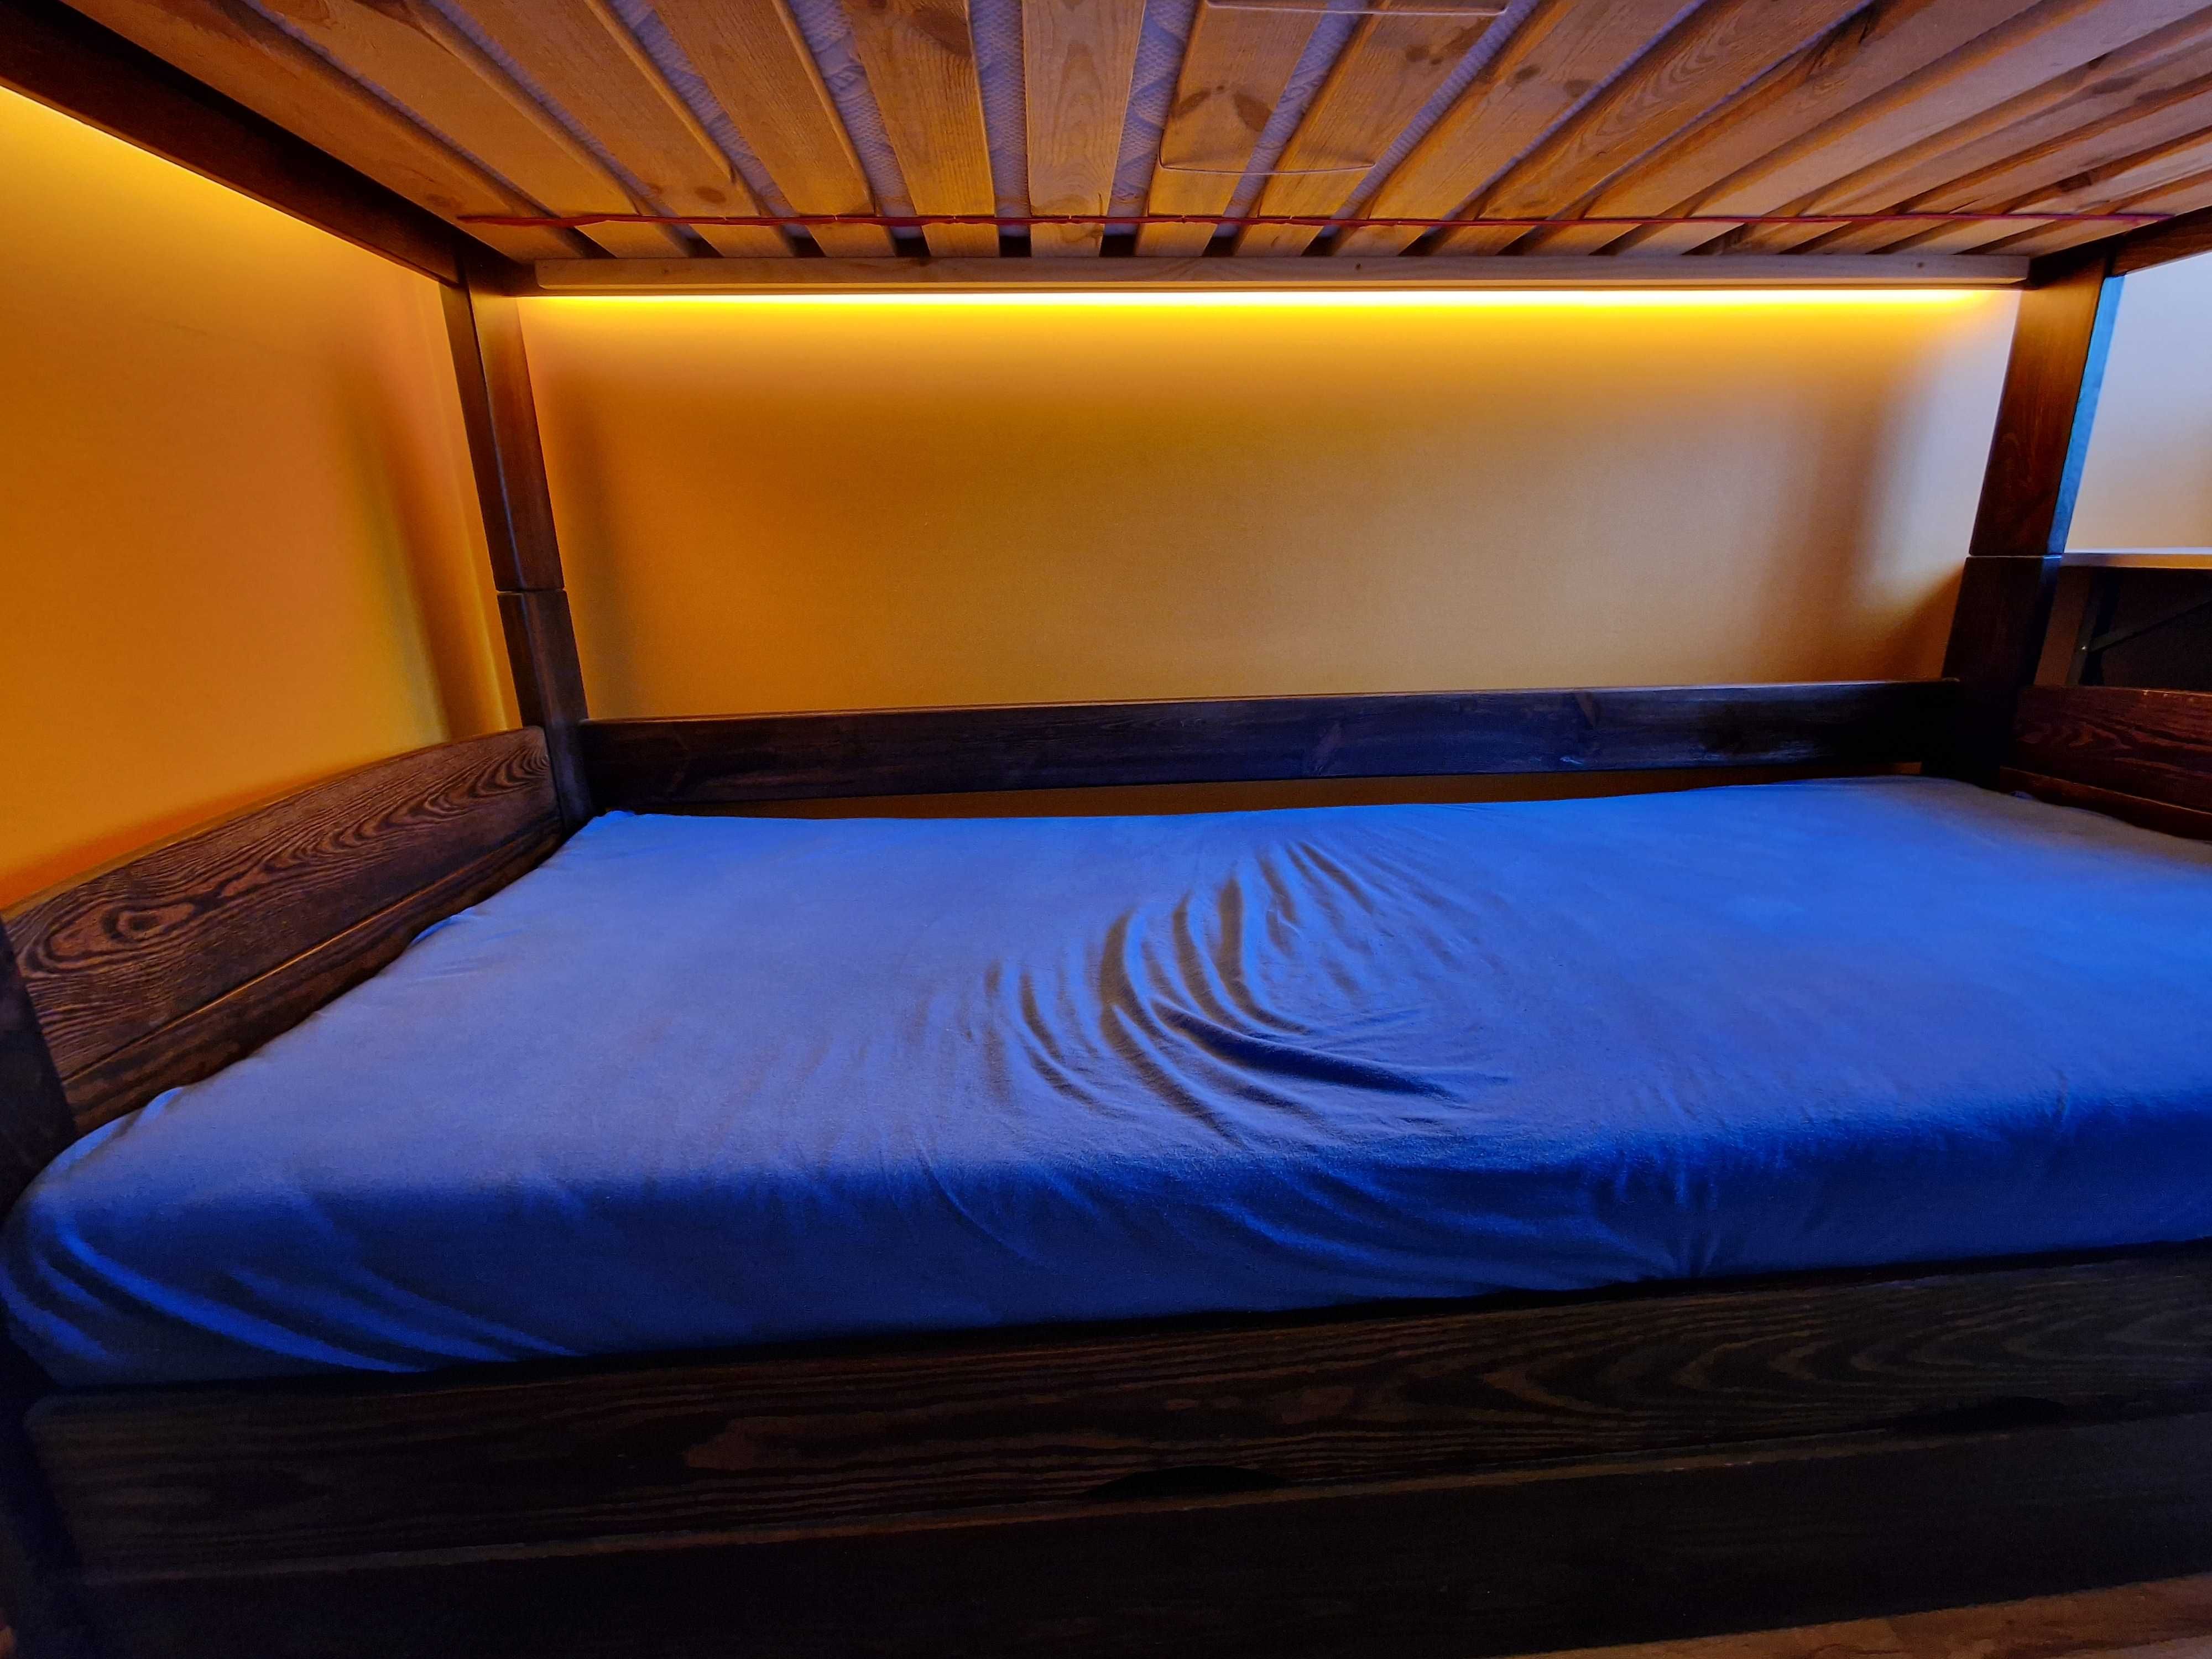 Łóżko piętrowe sosna 200x80cm, pojemnik na pościel, materace